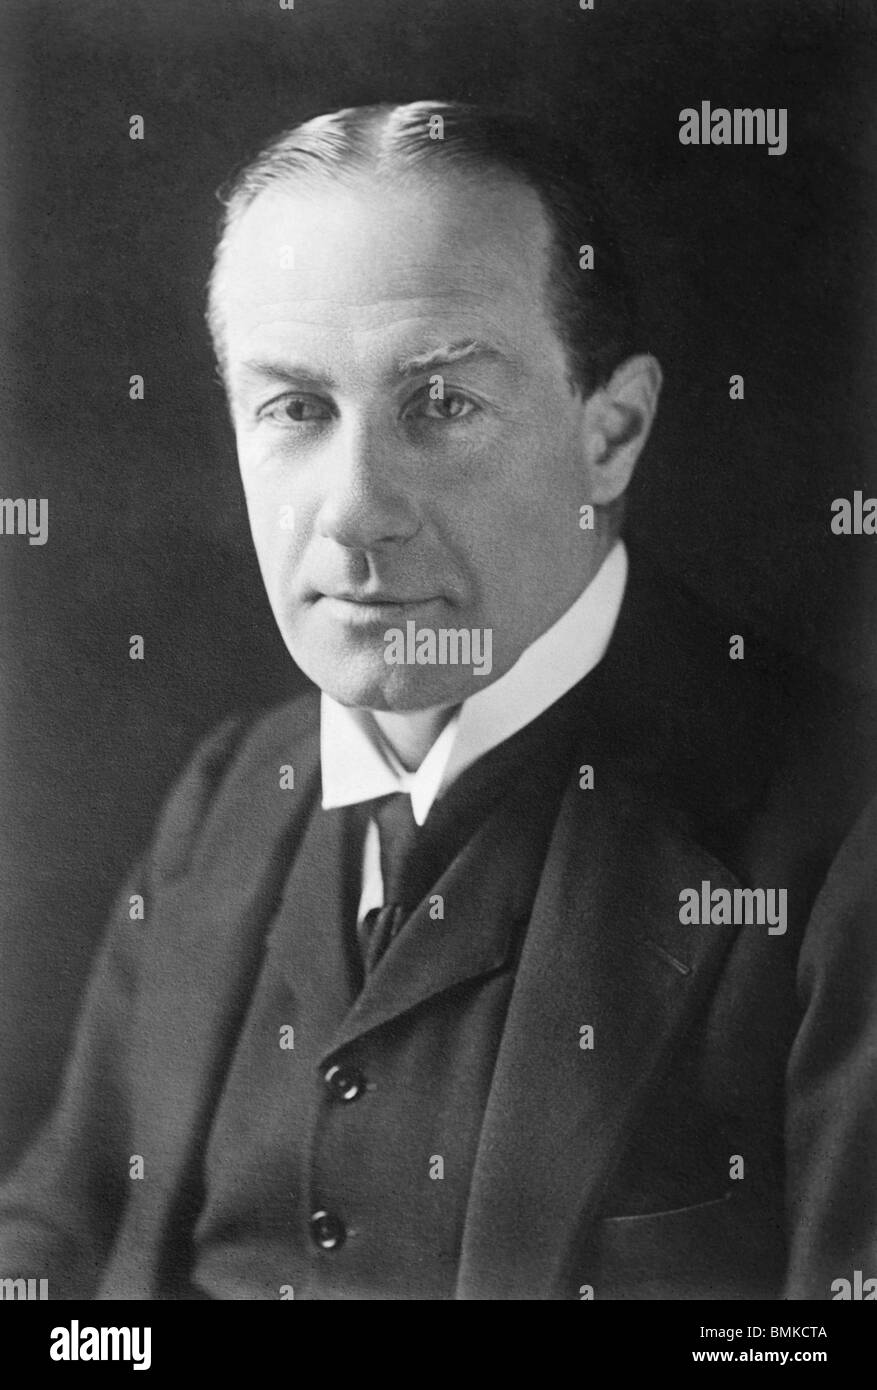 Porträt-Foto-c1920s von Stanley Baldwin (1867-1947) - konservative Staatsmann und Premierminister des Vereinigten Königreichs bei drei Gelegenheiten. Stockfoto